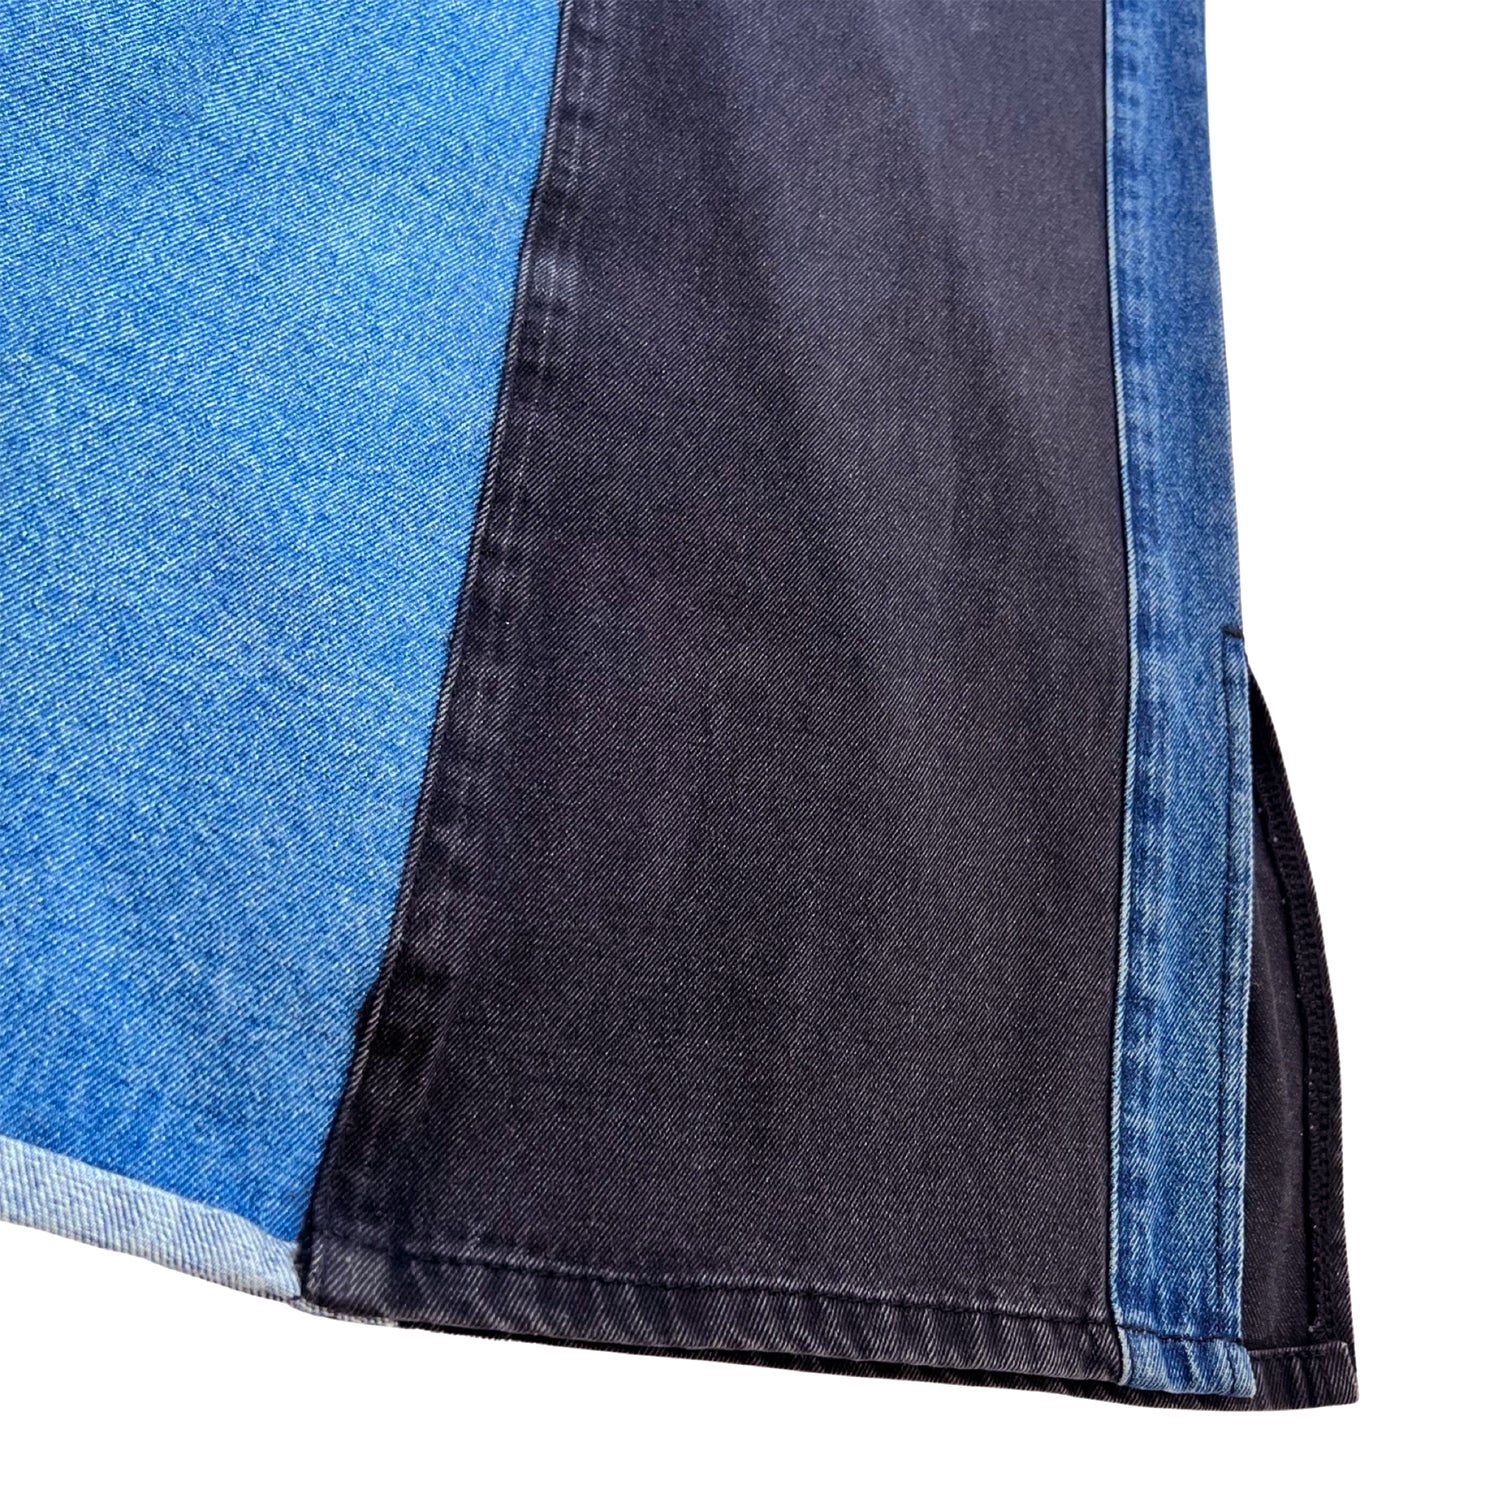 Upcycled Skirt in Paneled Blue & Black Denim